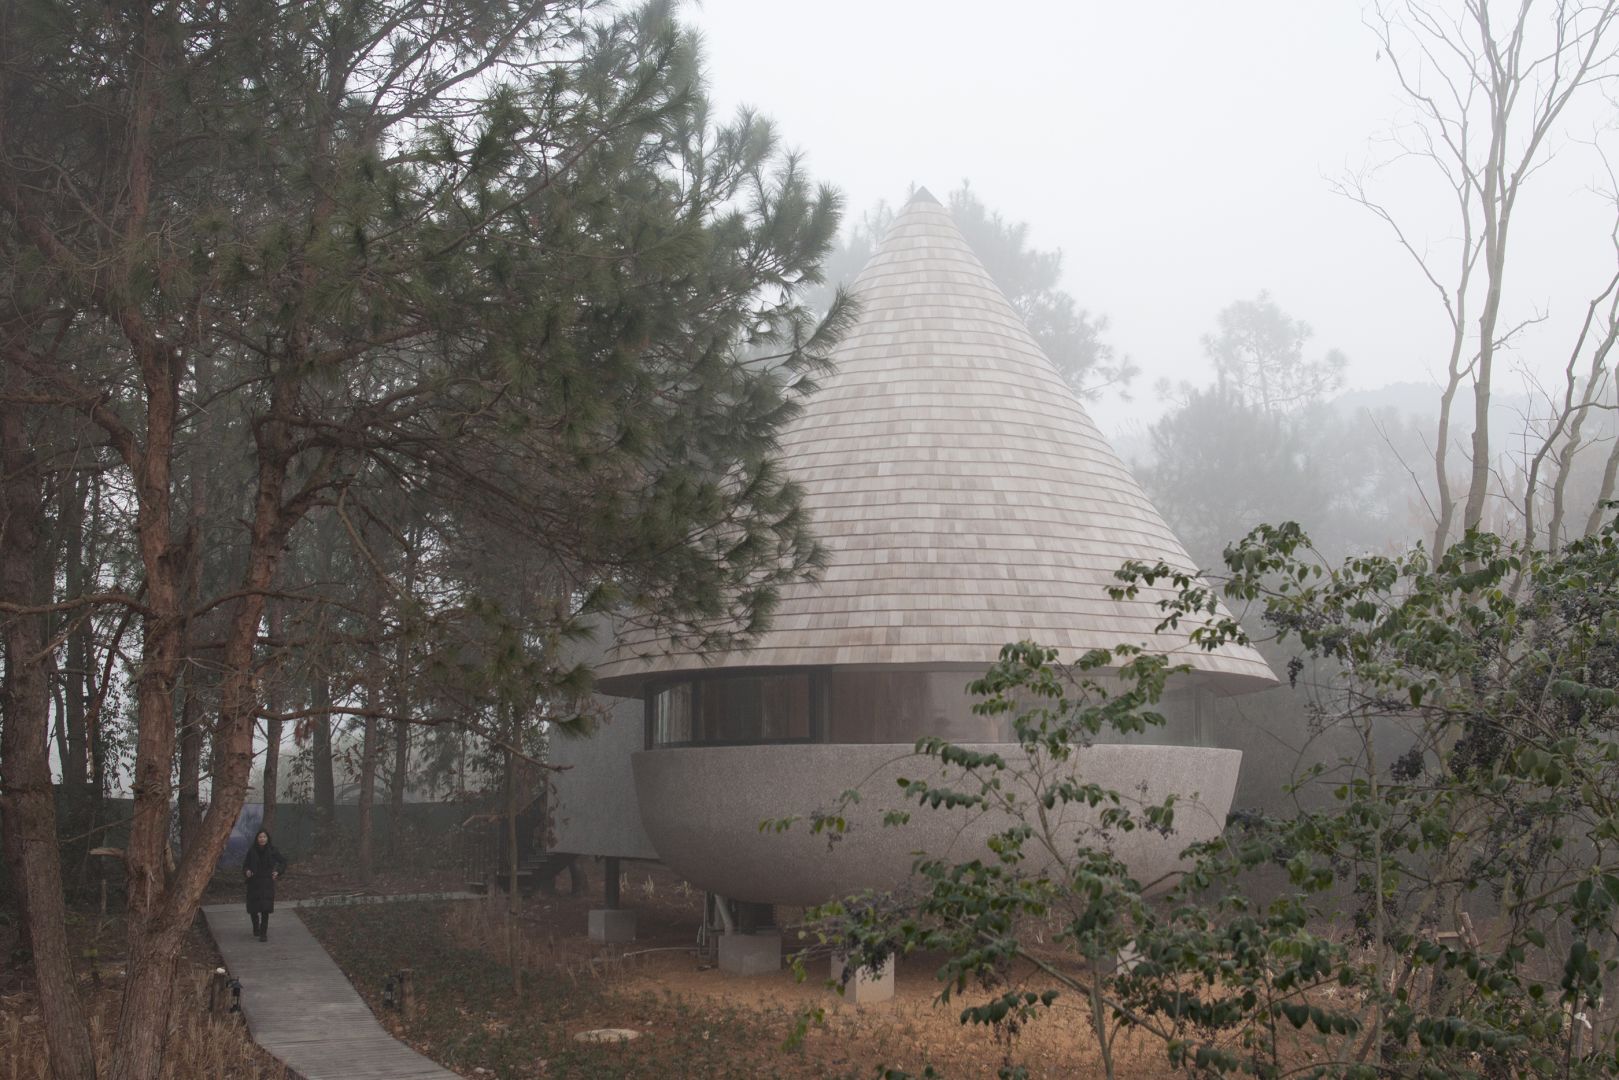 The Mushroom - projekt małego domu stworzony przez chińską pracownię ZJJZ Architecture Practice. Fot. ZJJZ Architecture Practice